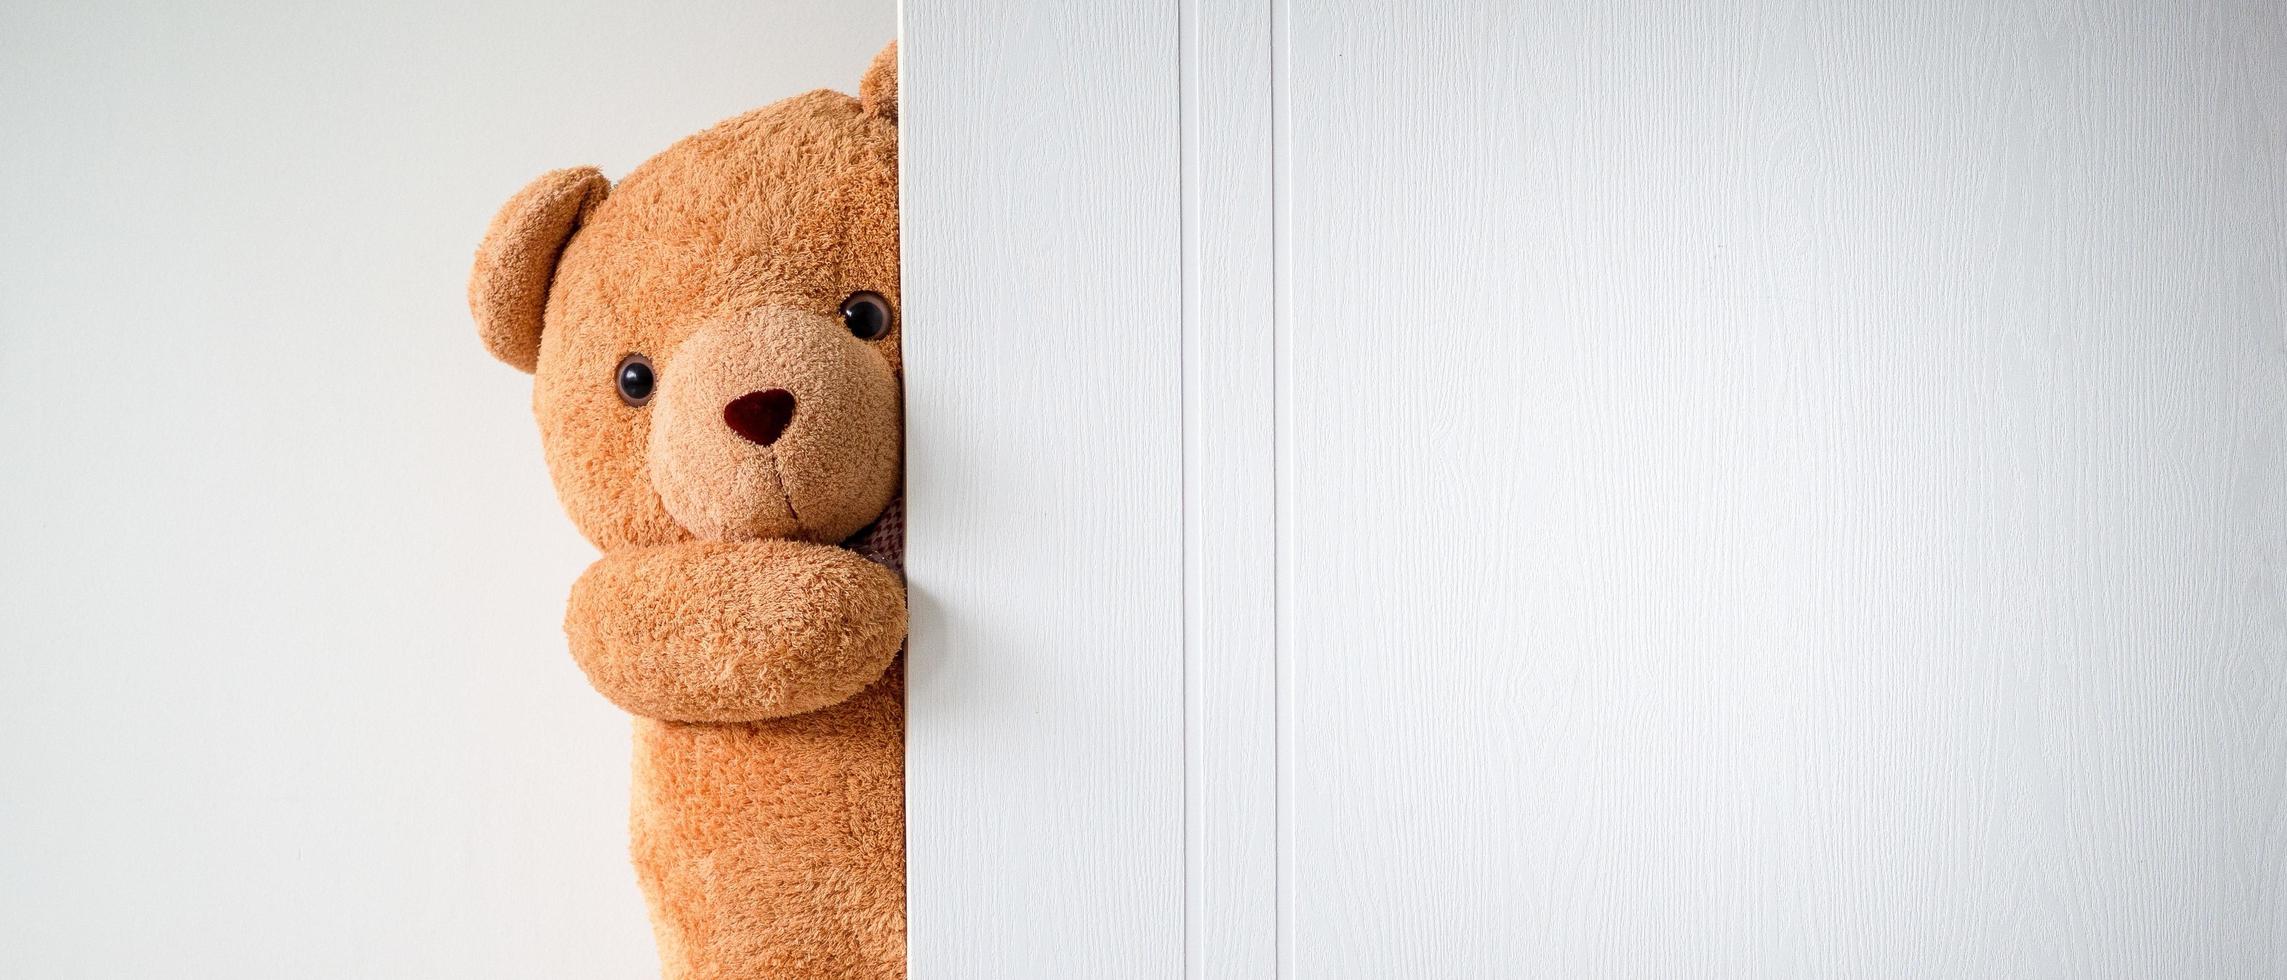 mignon ours en peluche marron se cache derrière une porte en bois